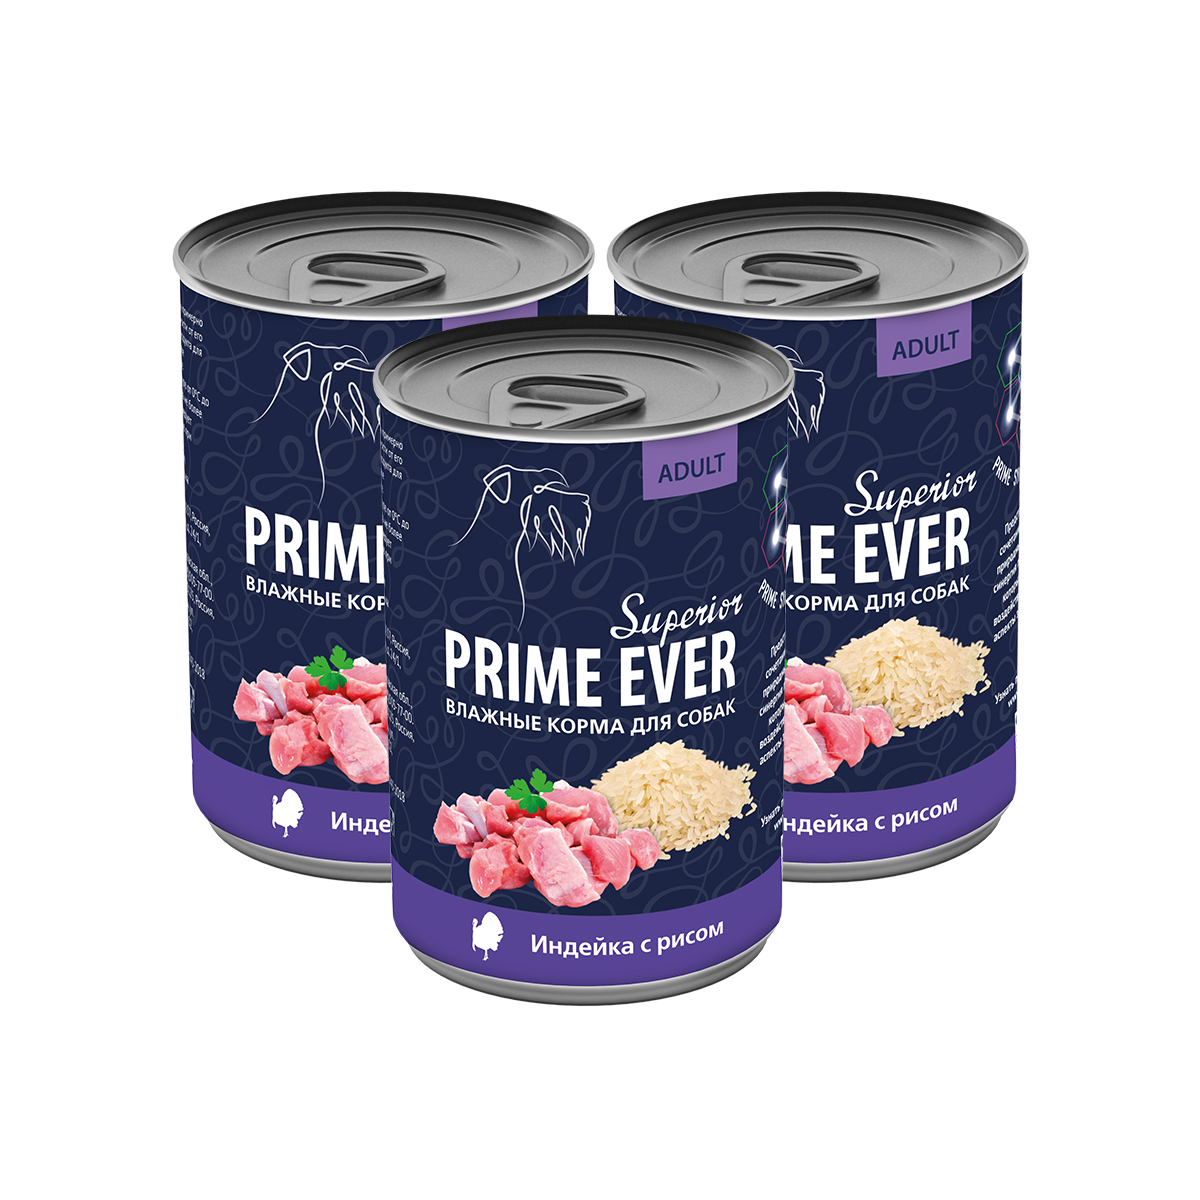 Консервы для собак Prime Ever Superior индейка с рисом, 3 шт по 400 г